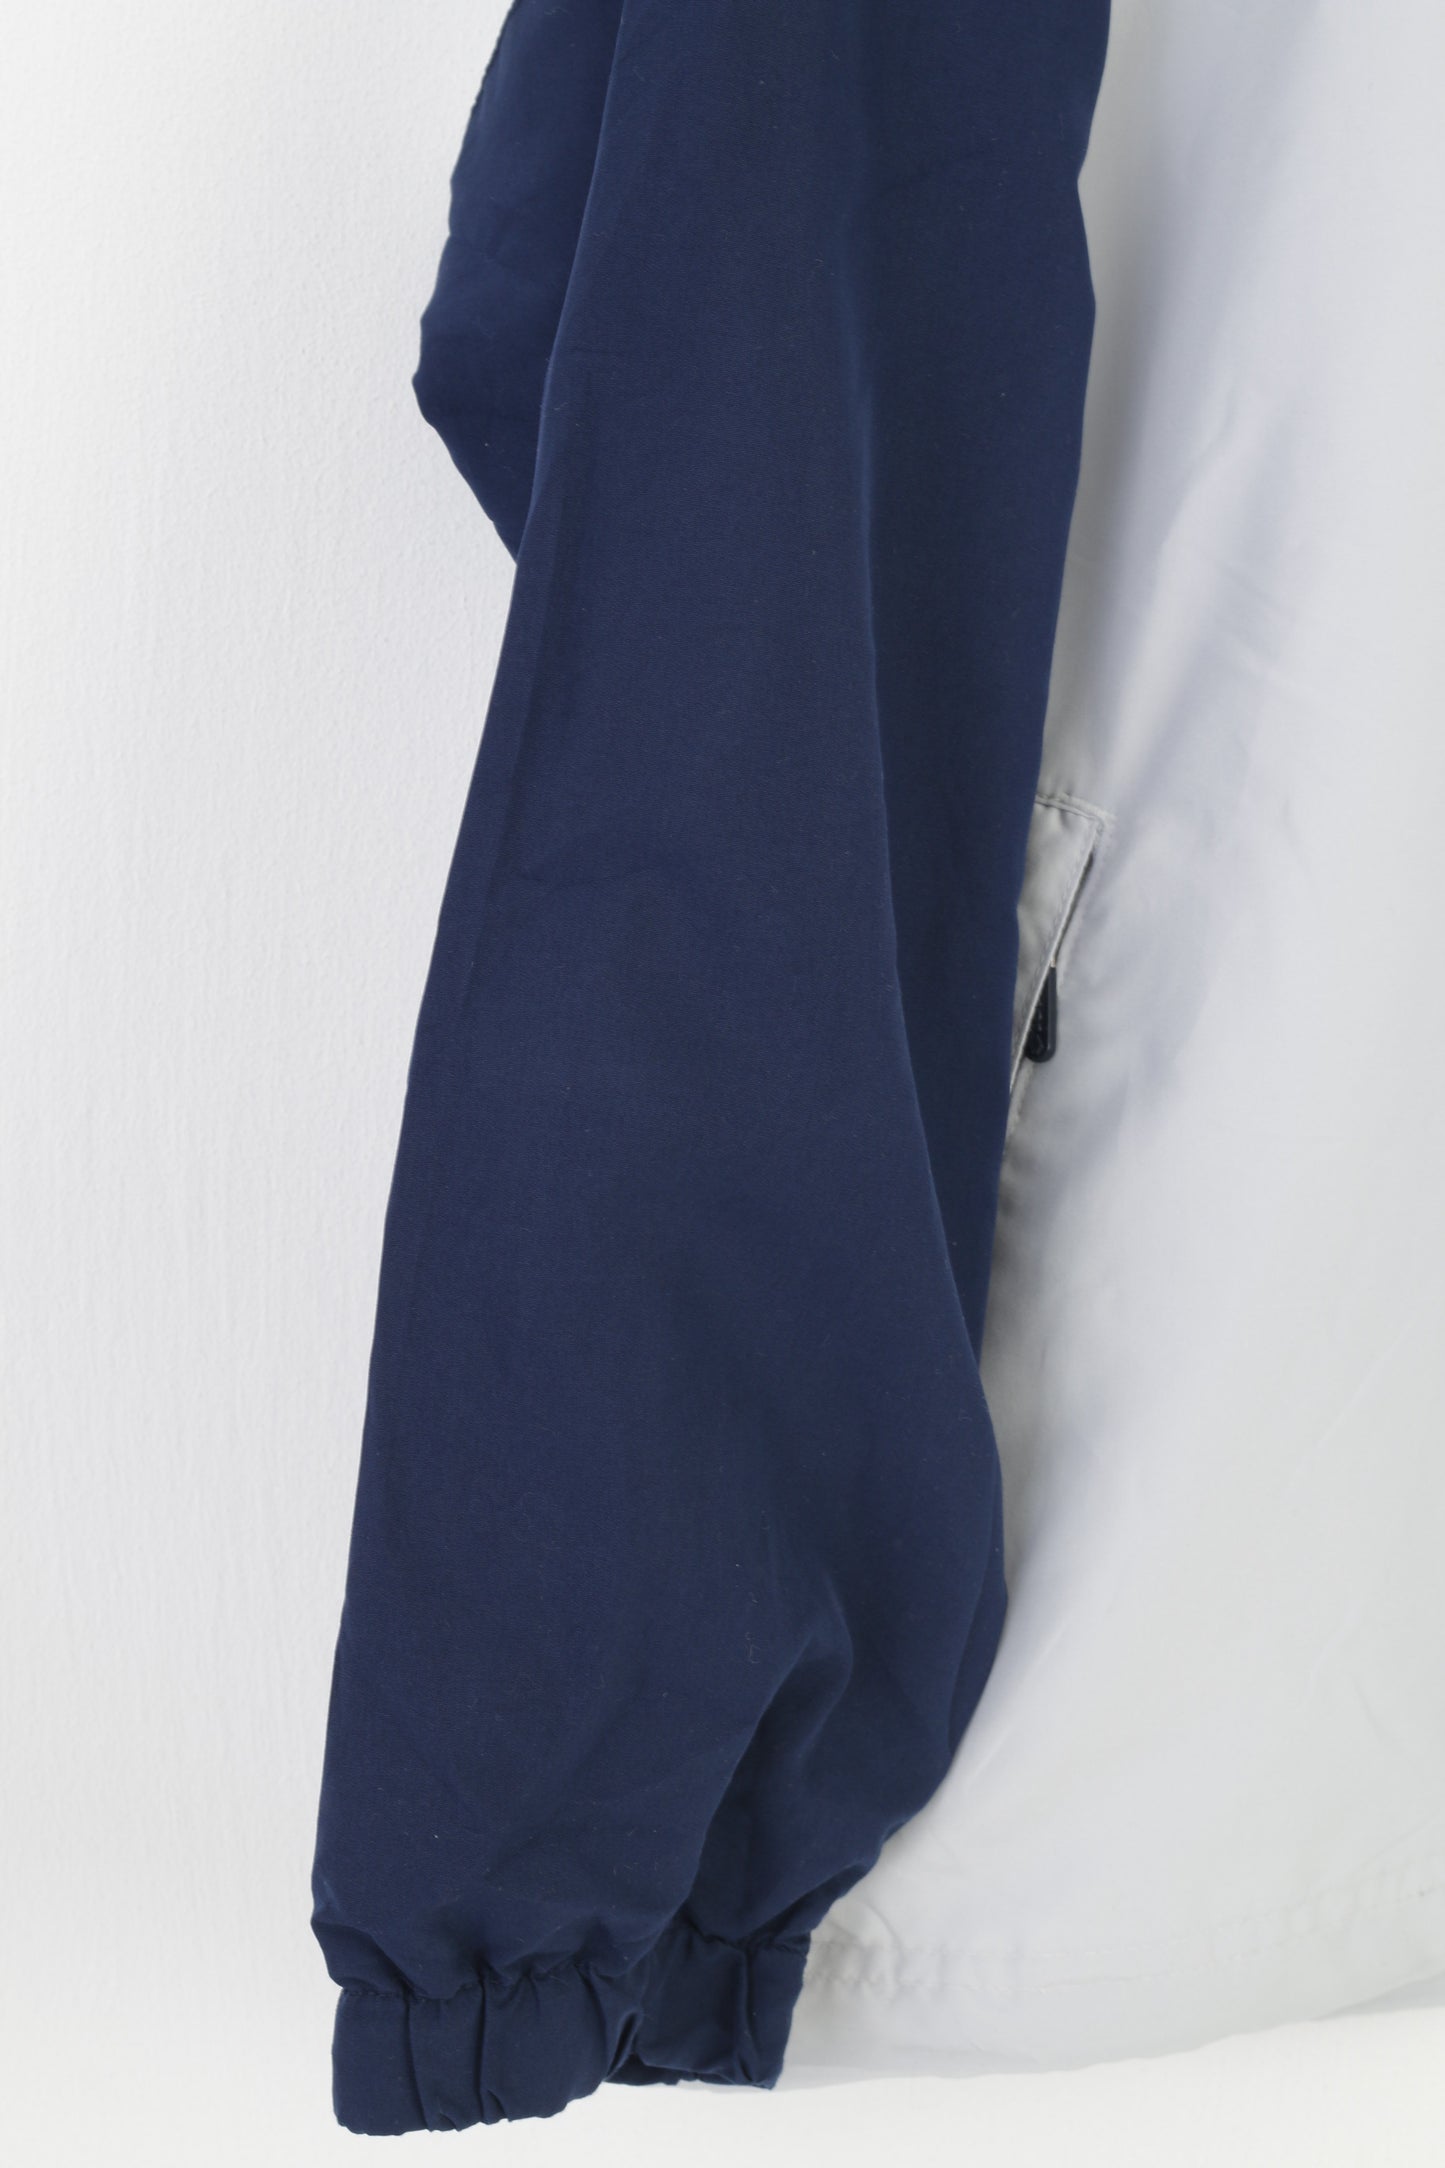 Lotto Giacca da ragazzo LB 16 anni Pullover con zip blu scuro Abbigliamento sportivo Tasche leggere Allenamento Top classico italiano vintage 